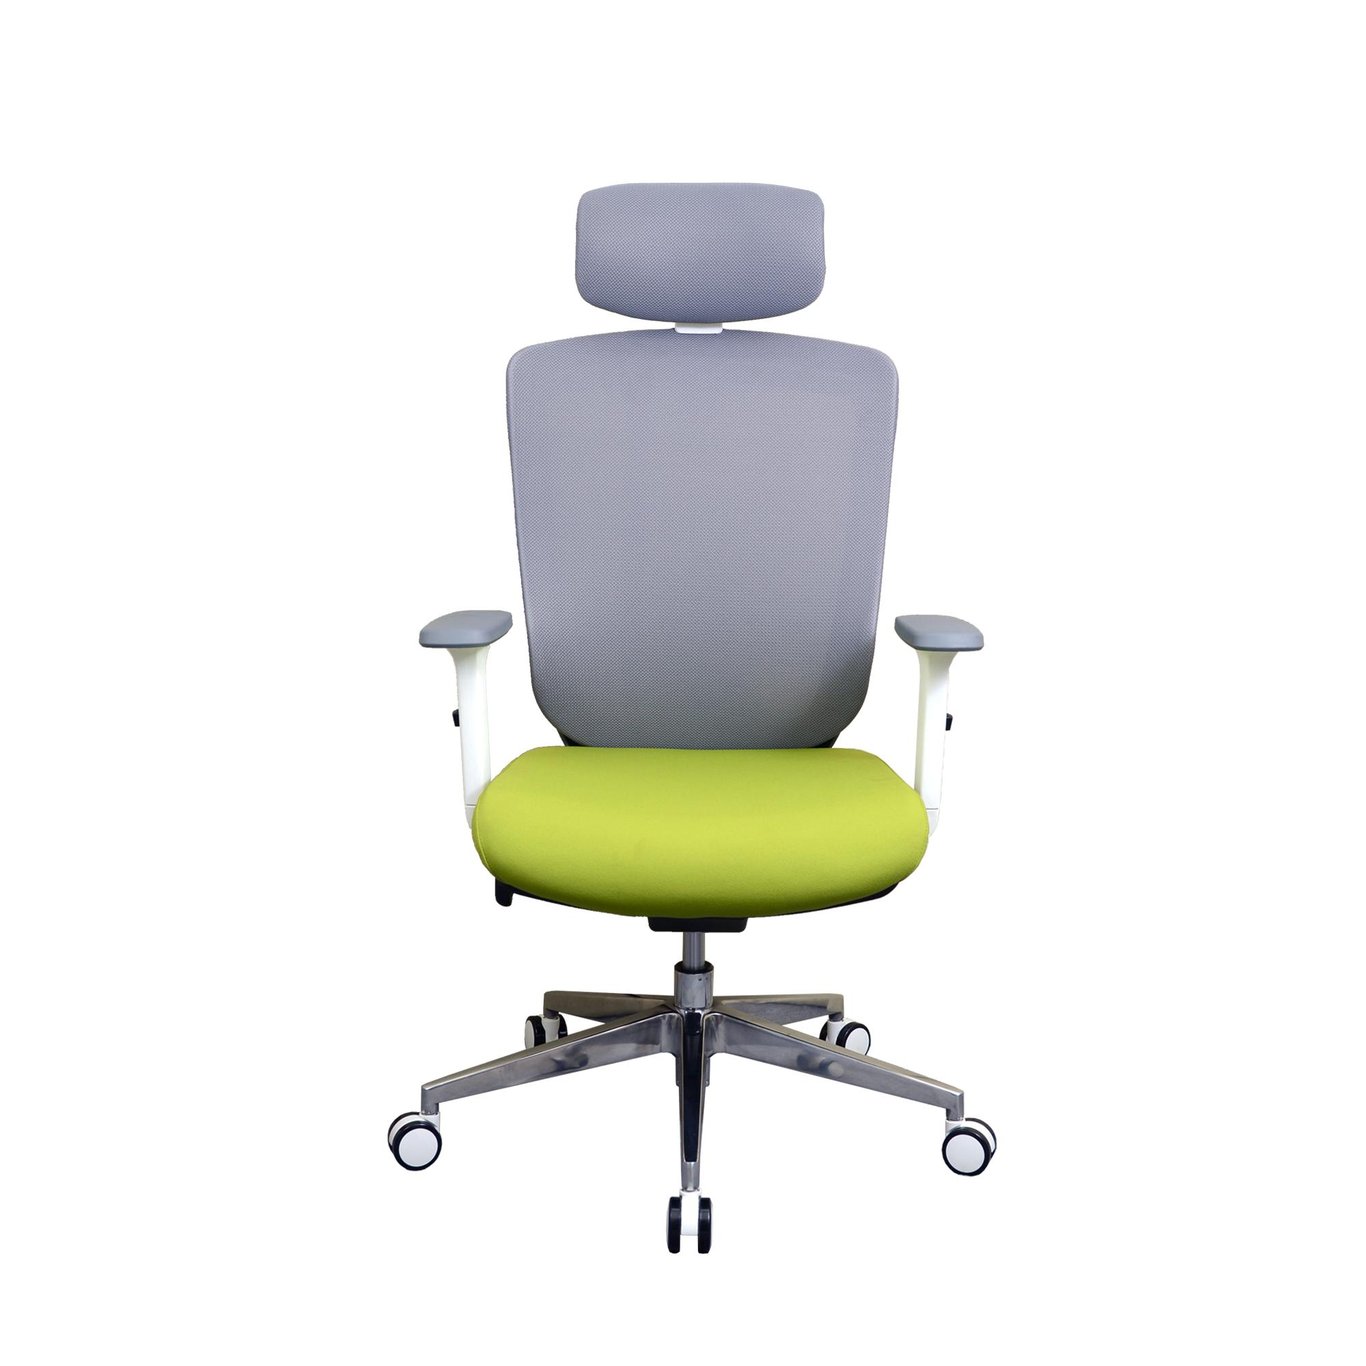 Zenox Zagen Office Chair 辦公椅 - 綠色